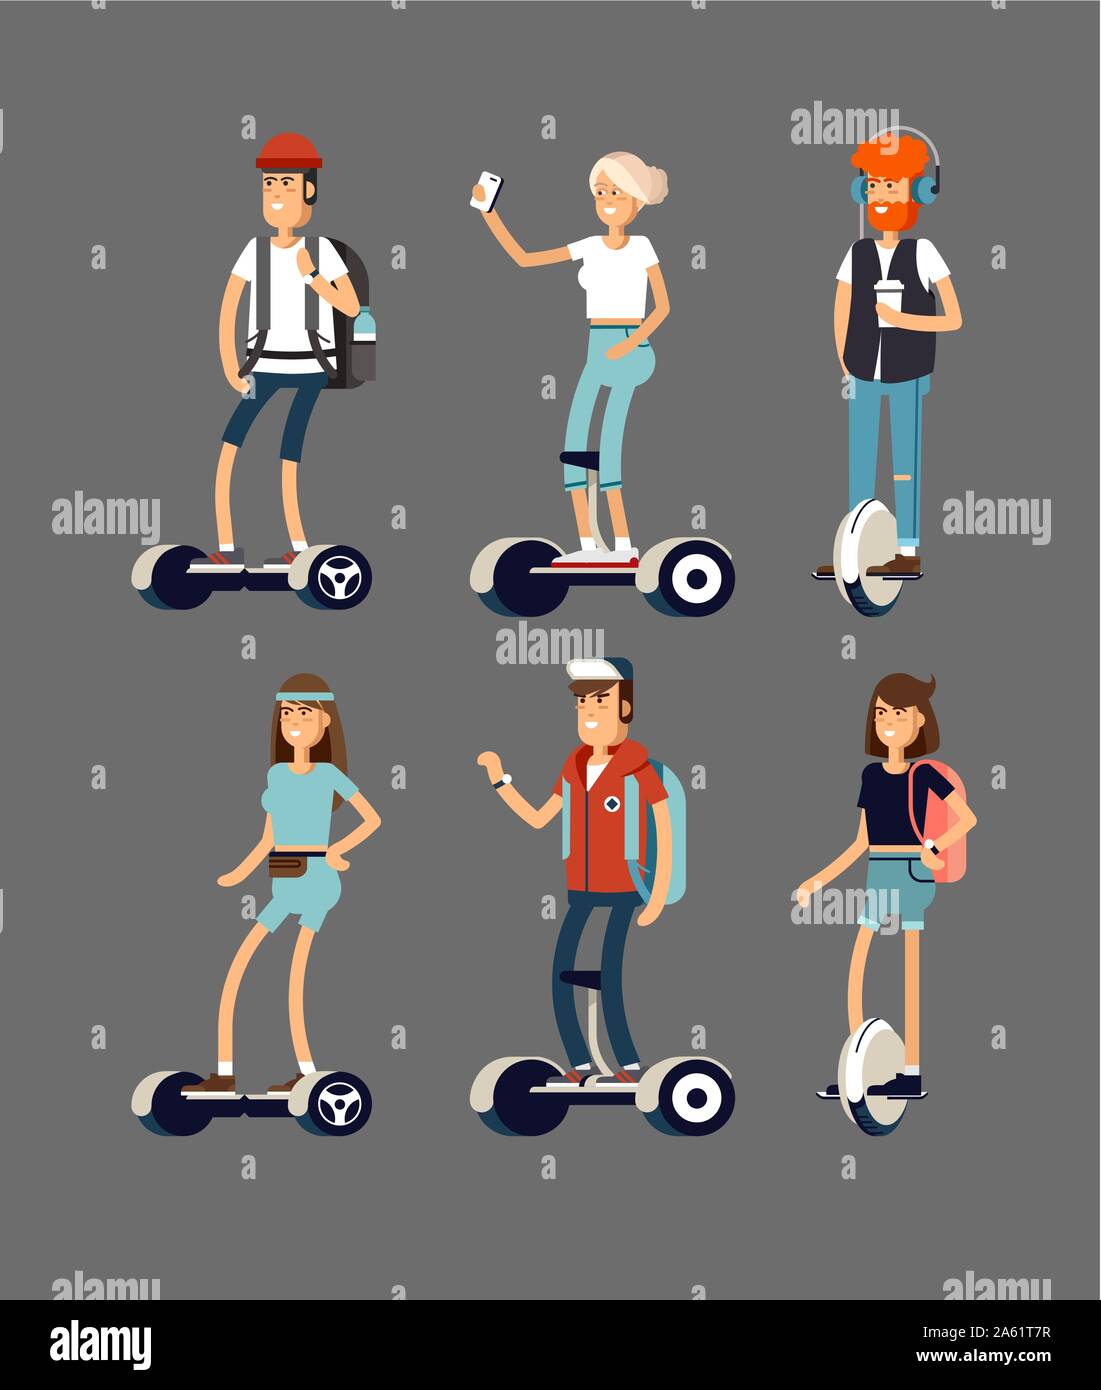 Conjunto de pueblos jóvenes activos con scooter eléctrico en nueva tecnología moderna hoverboard, hombre, mujer y niño auto rueda de equilibrio gyroscooter transporte ri Ilustración del Vector